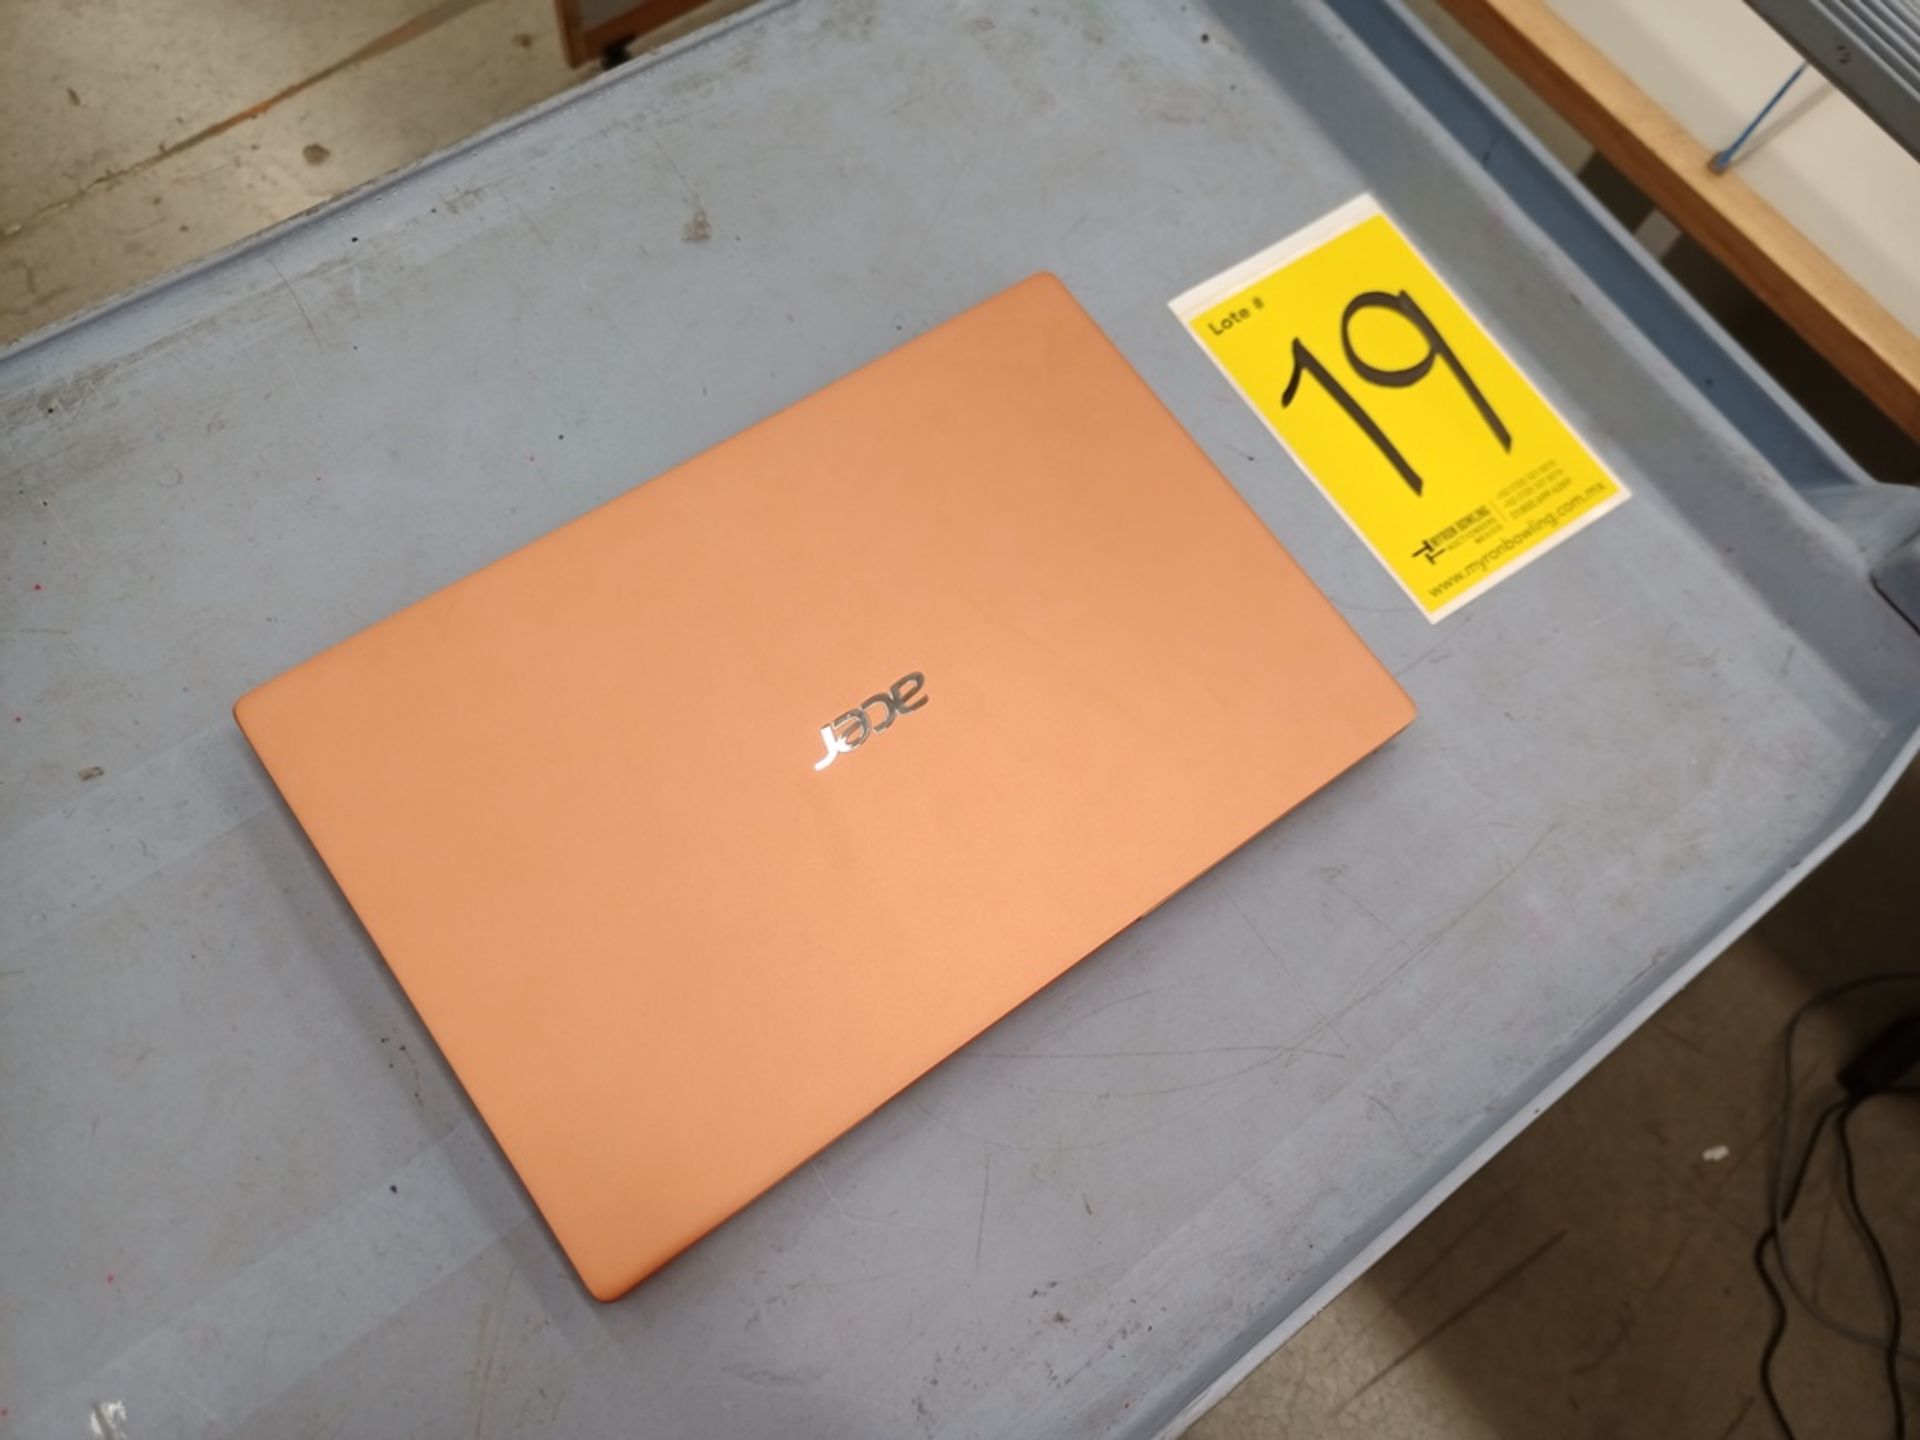 1 Computadora tipo laptop Marca ACER, Modelo SF314595959, Serie NXA0RAL001115100303400, Color Melon - Image 20 of 21